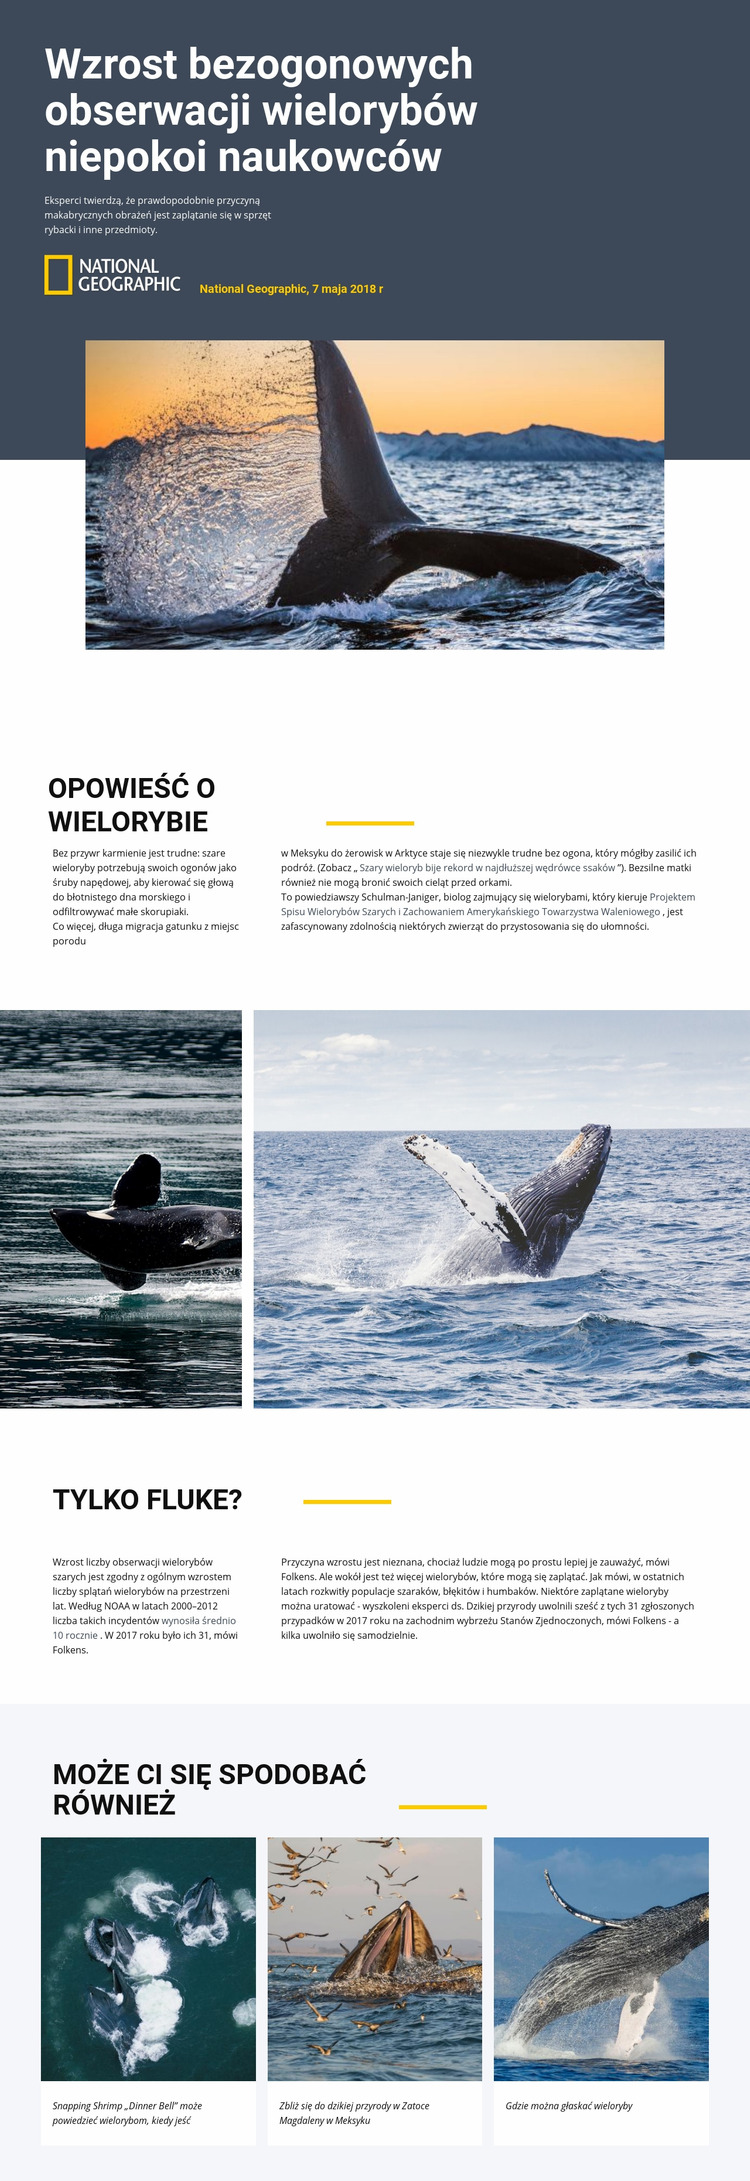 Centrum obserwacji wielorybów Szablon Joomla